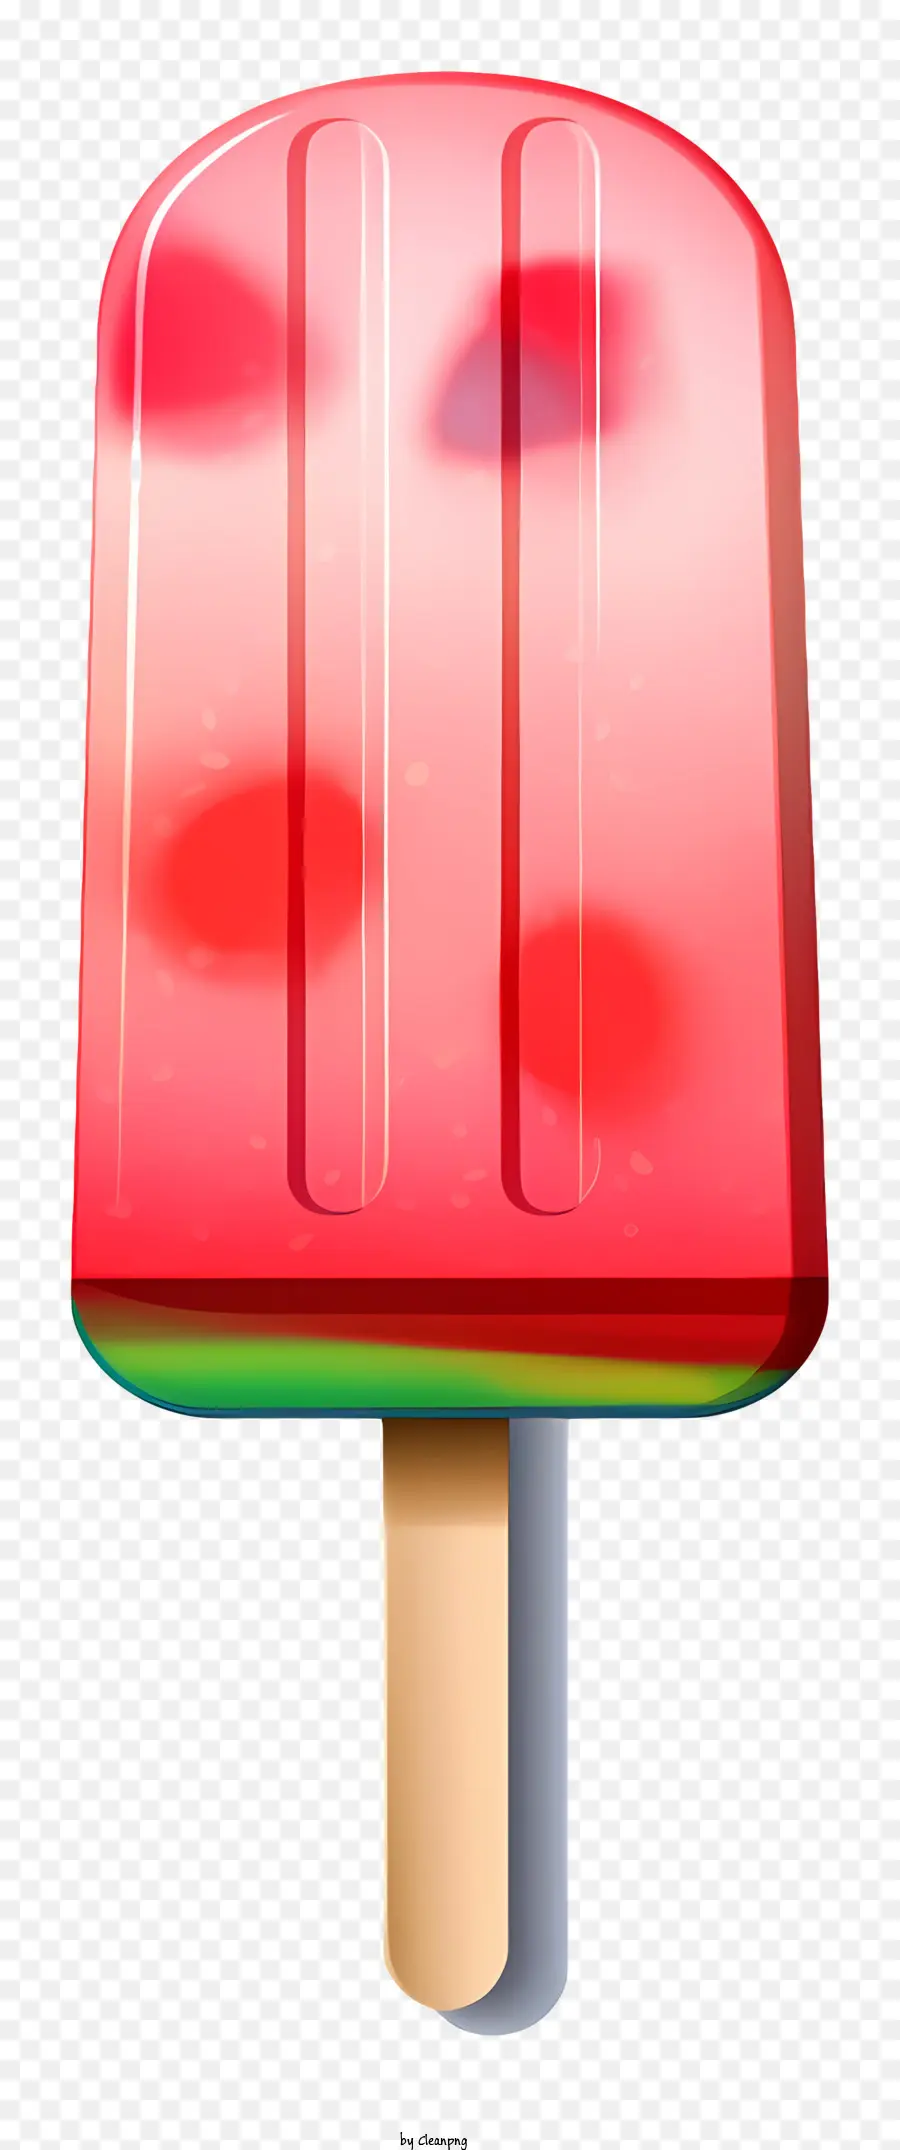 kem dưa hấu kem kem hình nón màu đỏ và màu xanh lá cây - Hình nón kem dưa hấu với topping anh đào